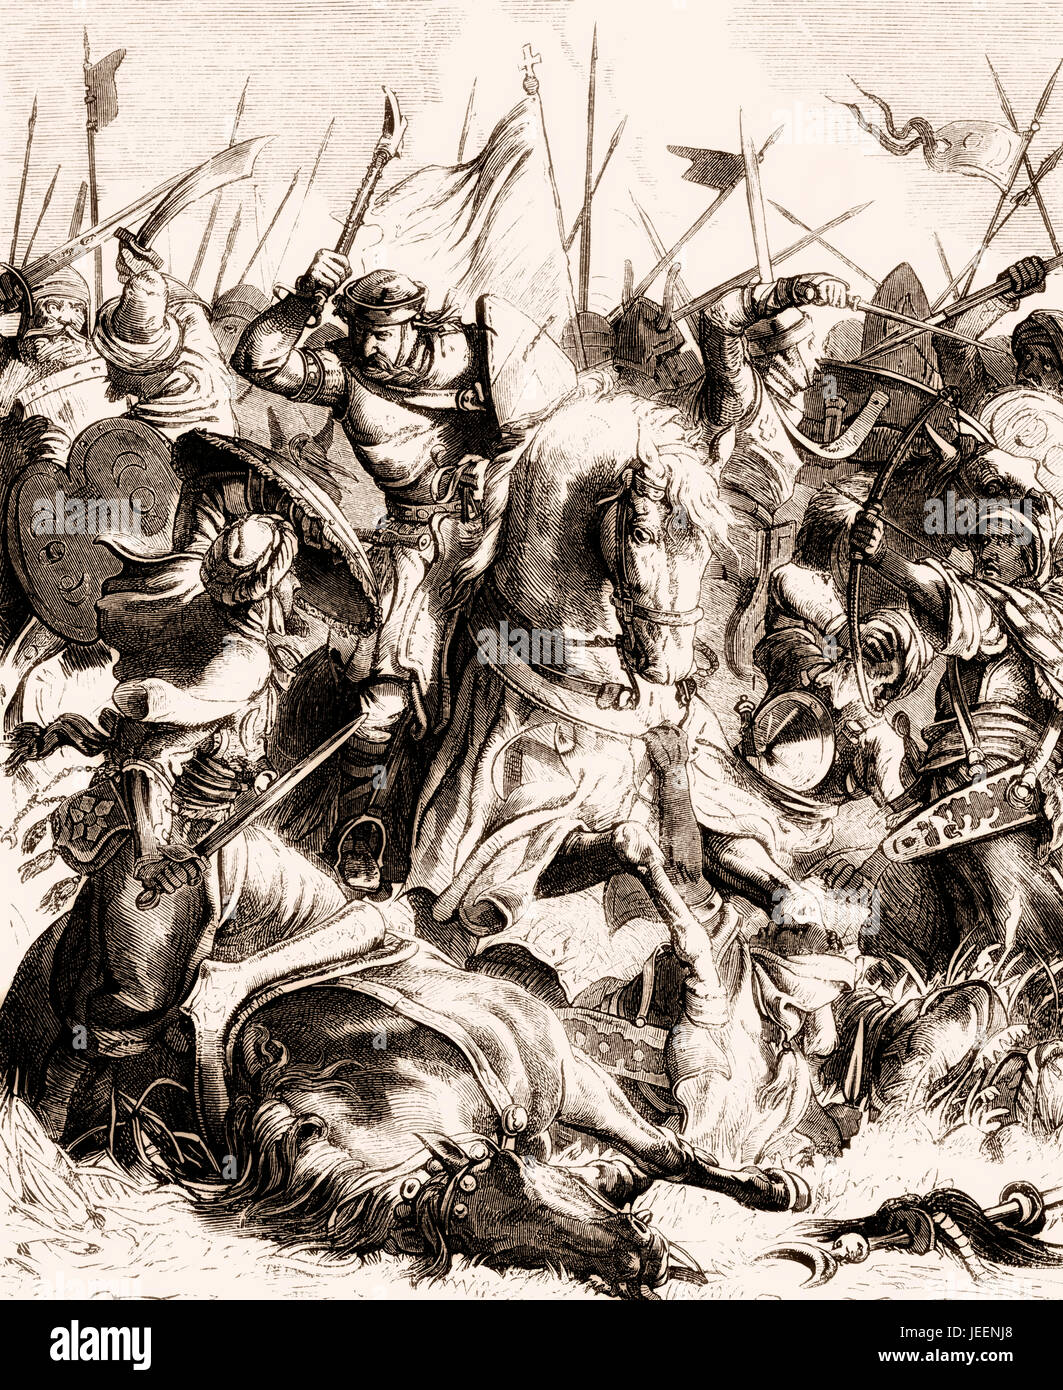 Charles Martel nella battaglia di Tours o Poitiers, 10 ottobre 732 Foto Stock